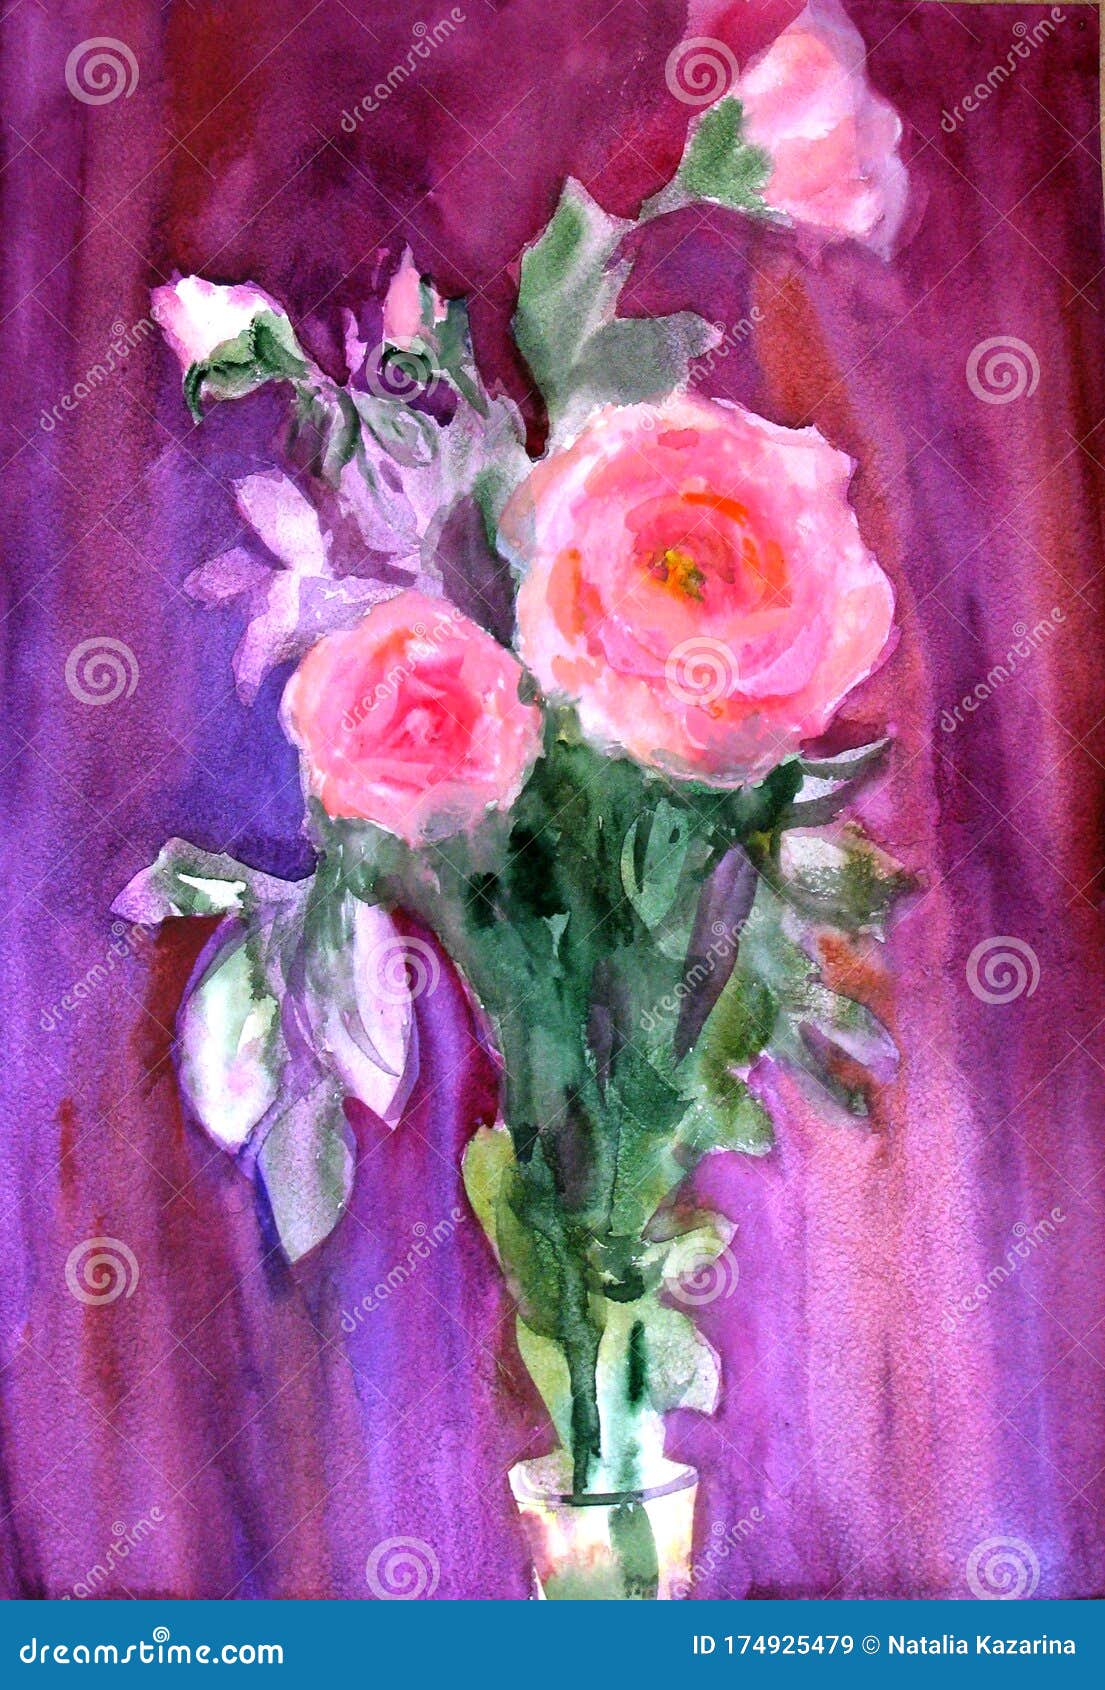 淡紫色背景中粉色玫瑰和其他花的水彩束库存图片 图片包括有例证 要素 装饰 浪漫 感激的